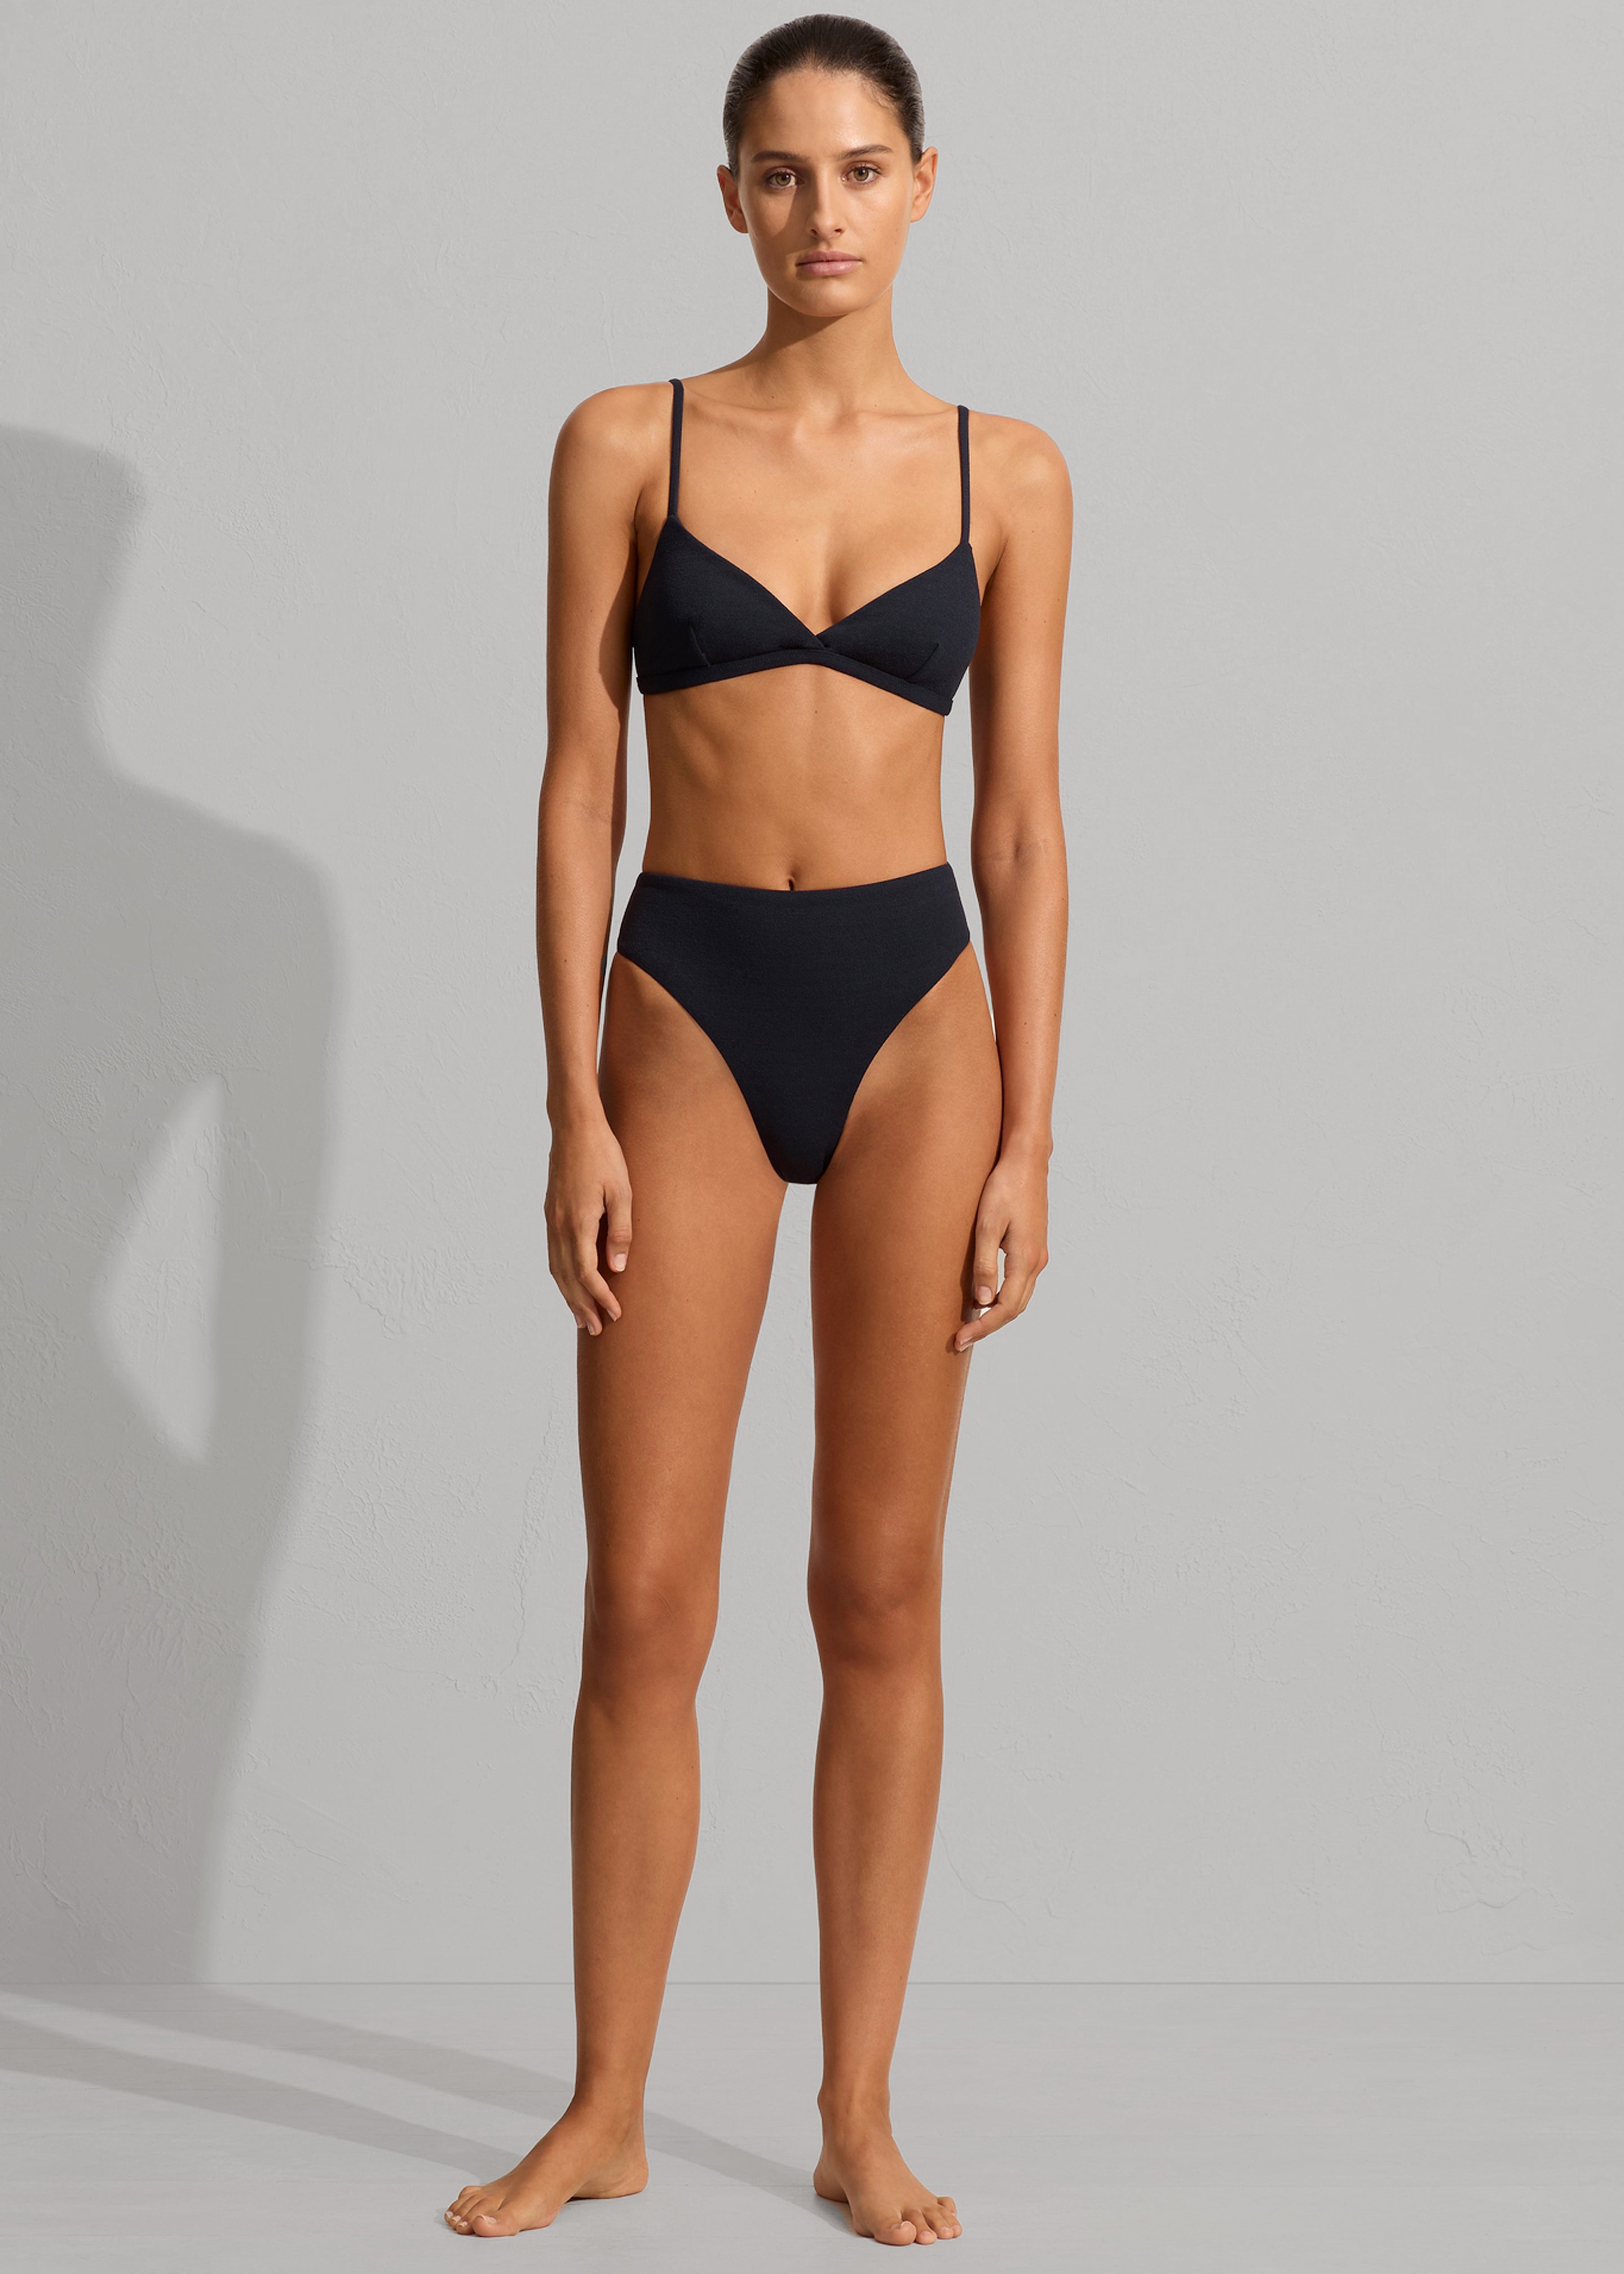 Matteau Nineties High Waist Bikini Brief - Navy Crinkle - 4